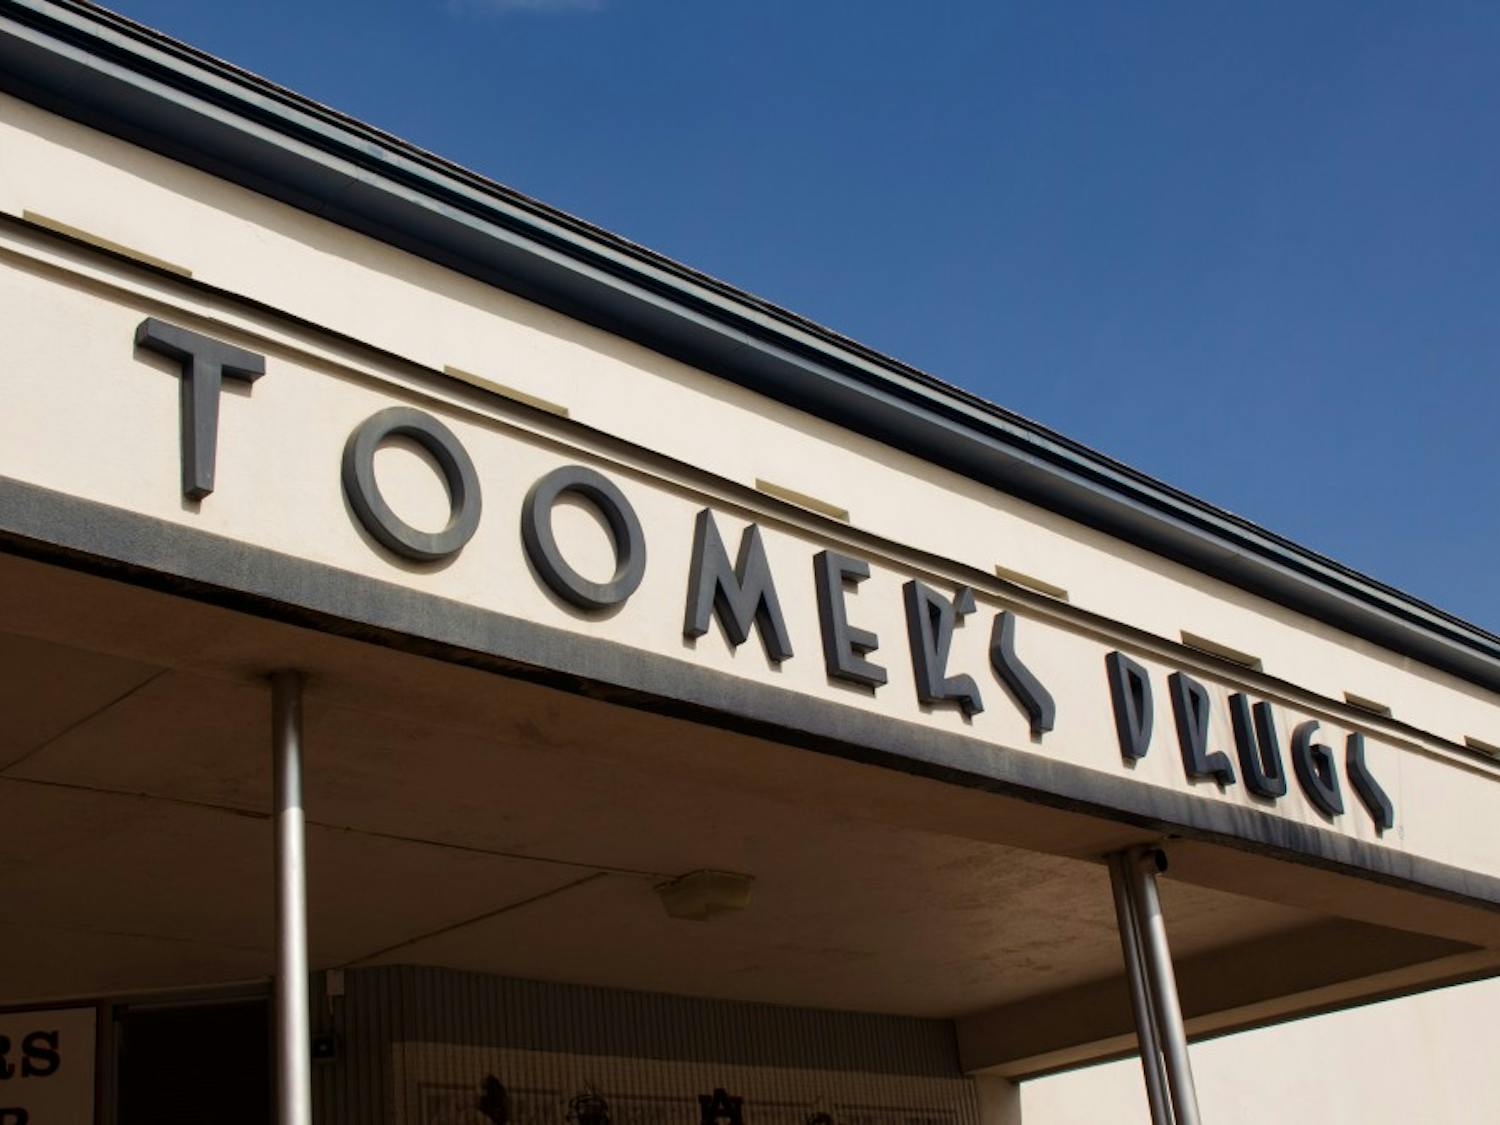 Toomer's Drugs storefront